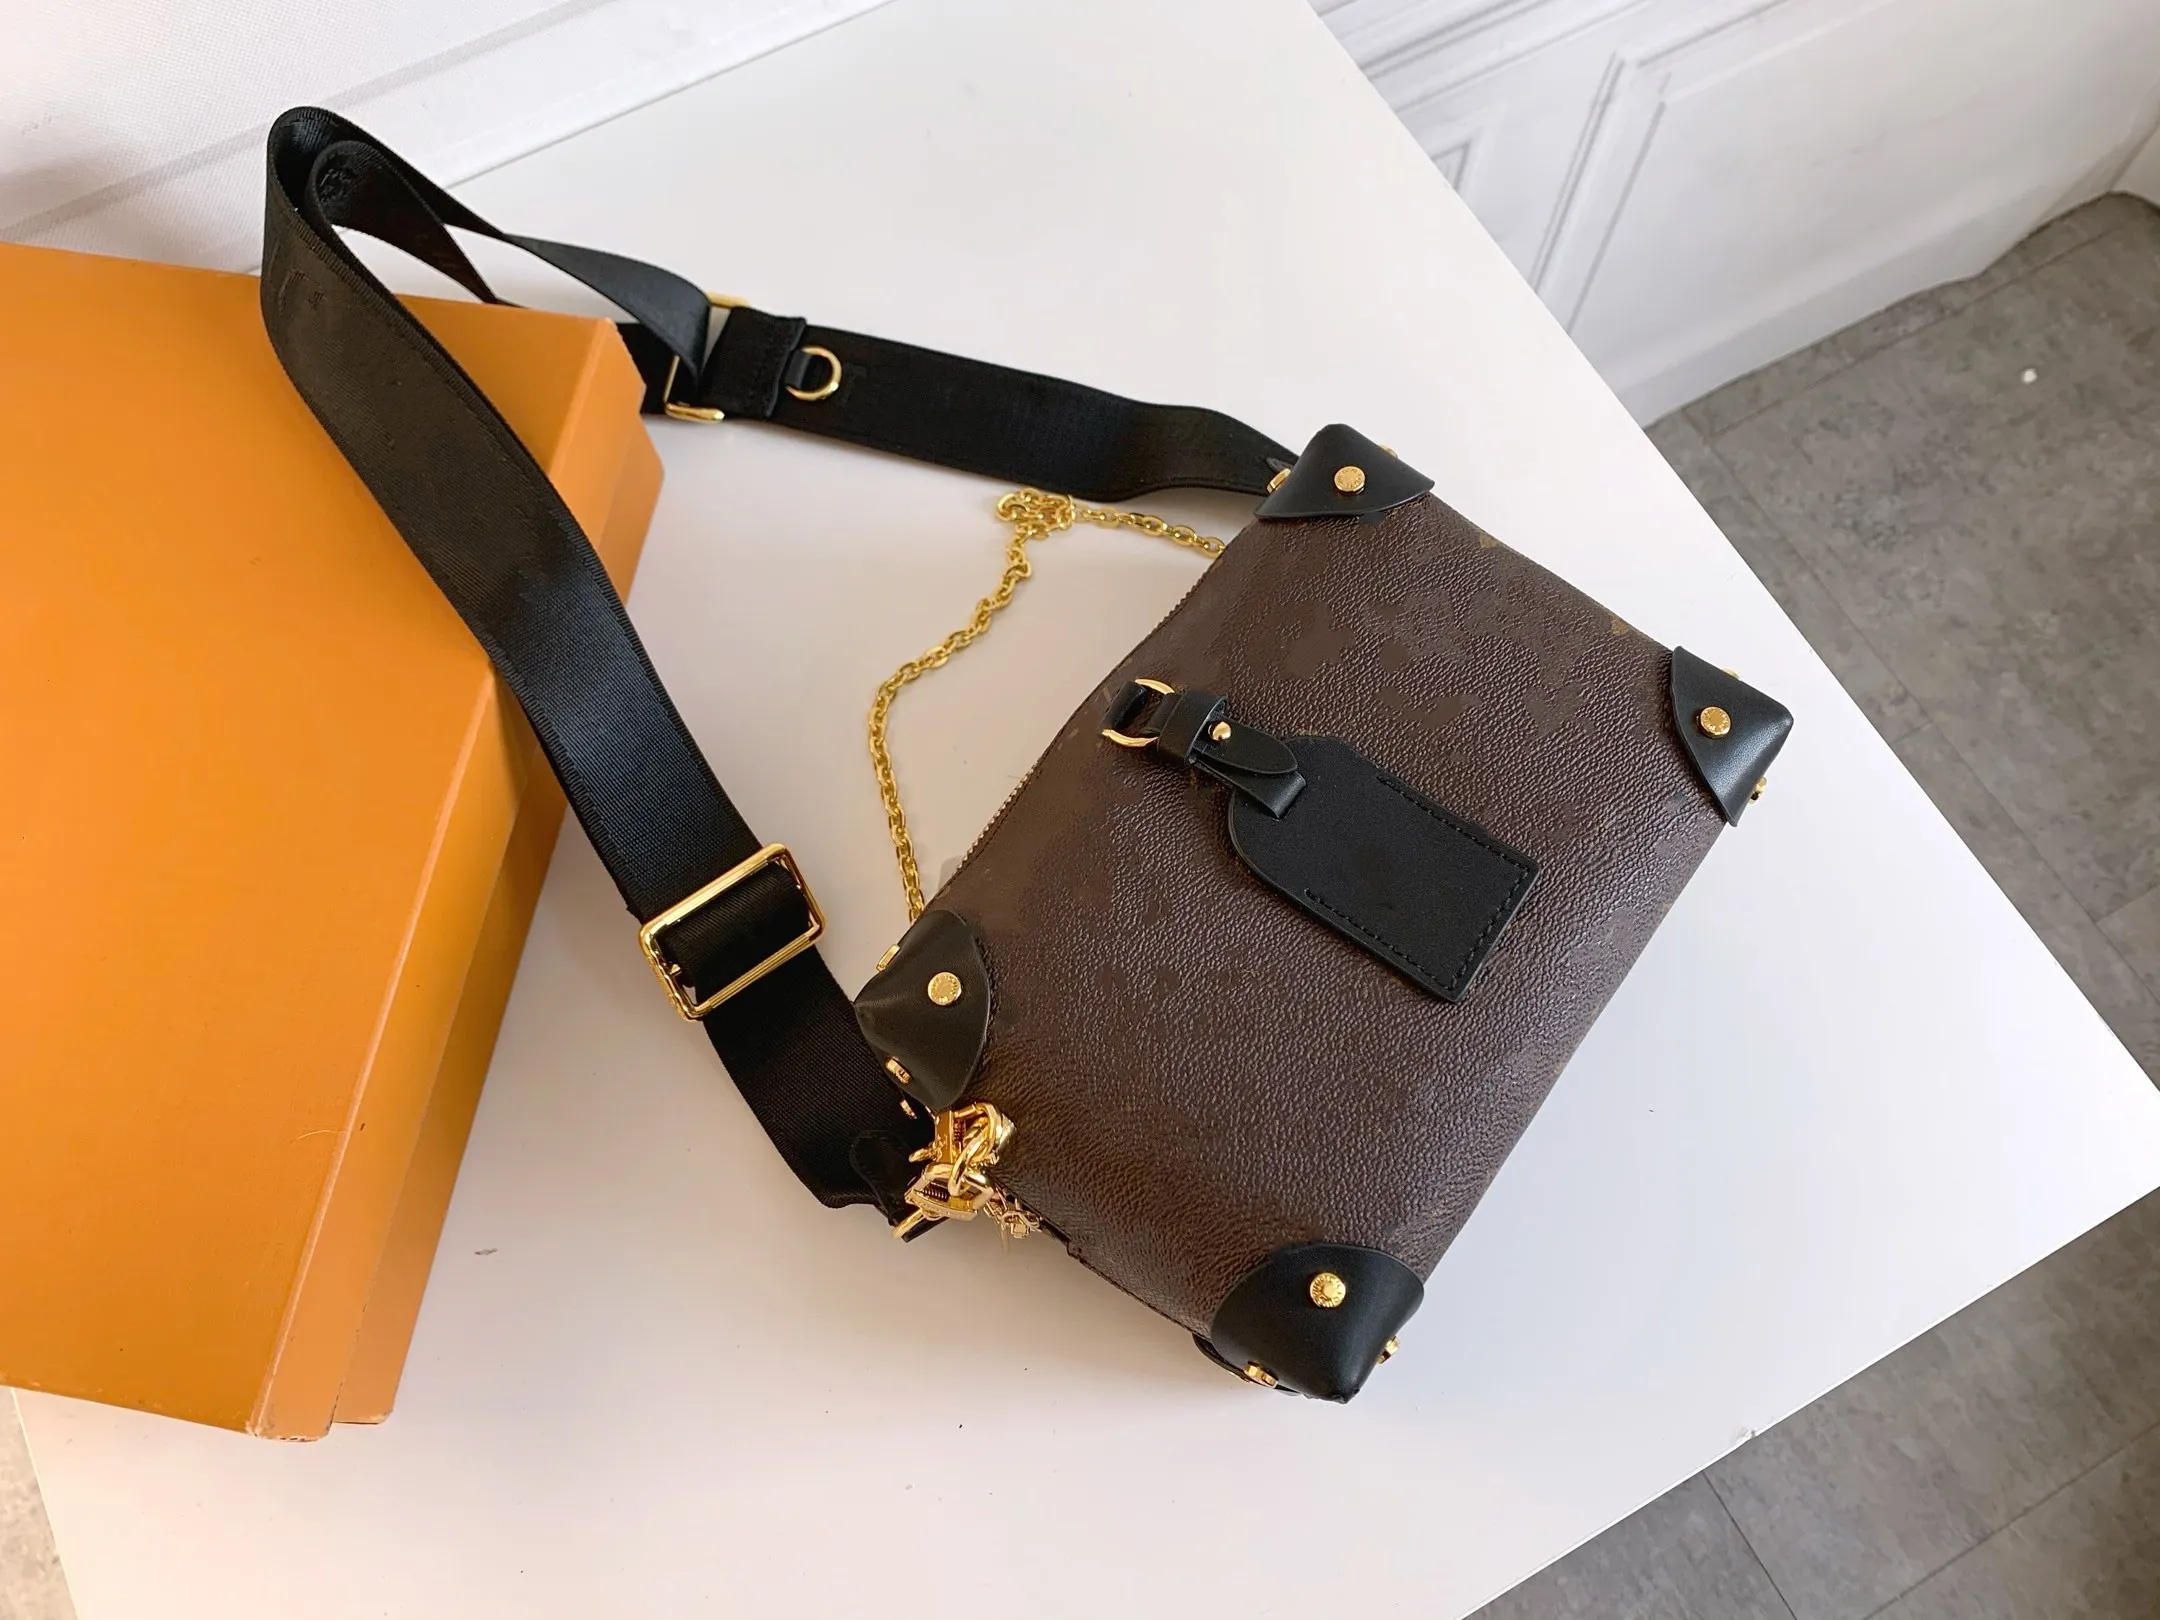 Luxury bag PETITE MALLE SOUPLE ladies handbags full leather black handbag embossed wallet